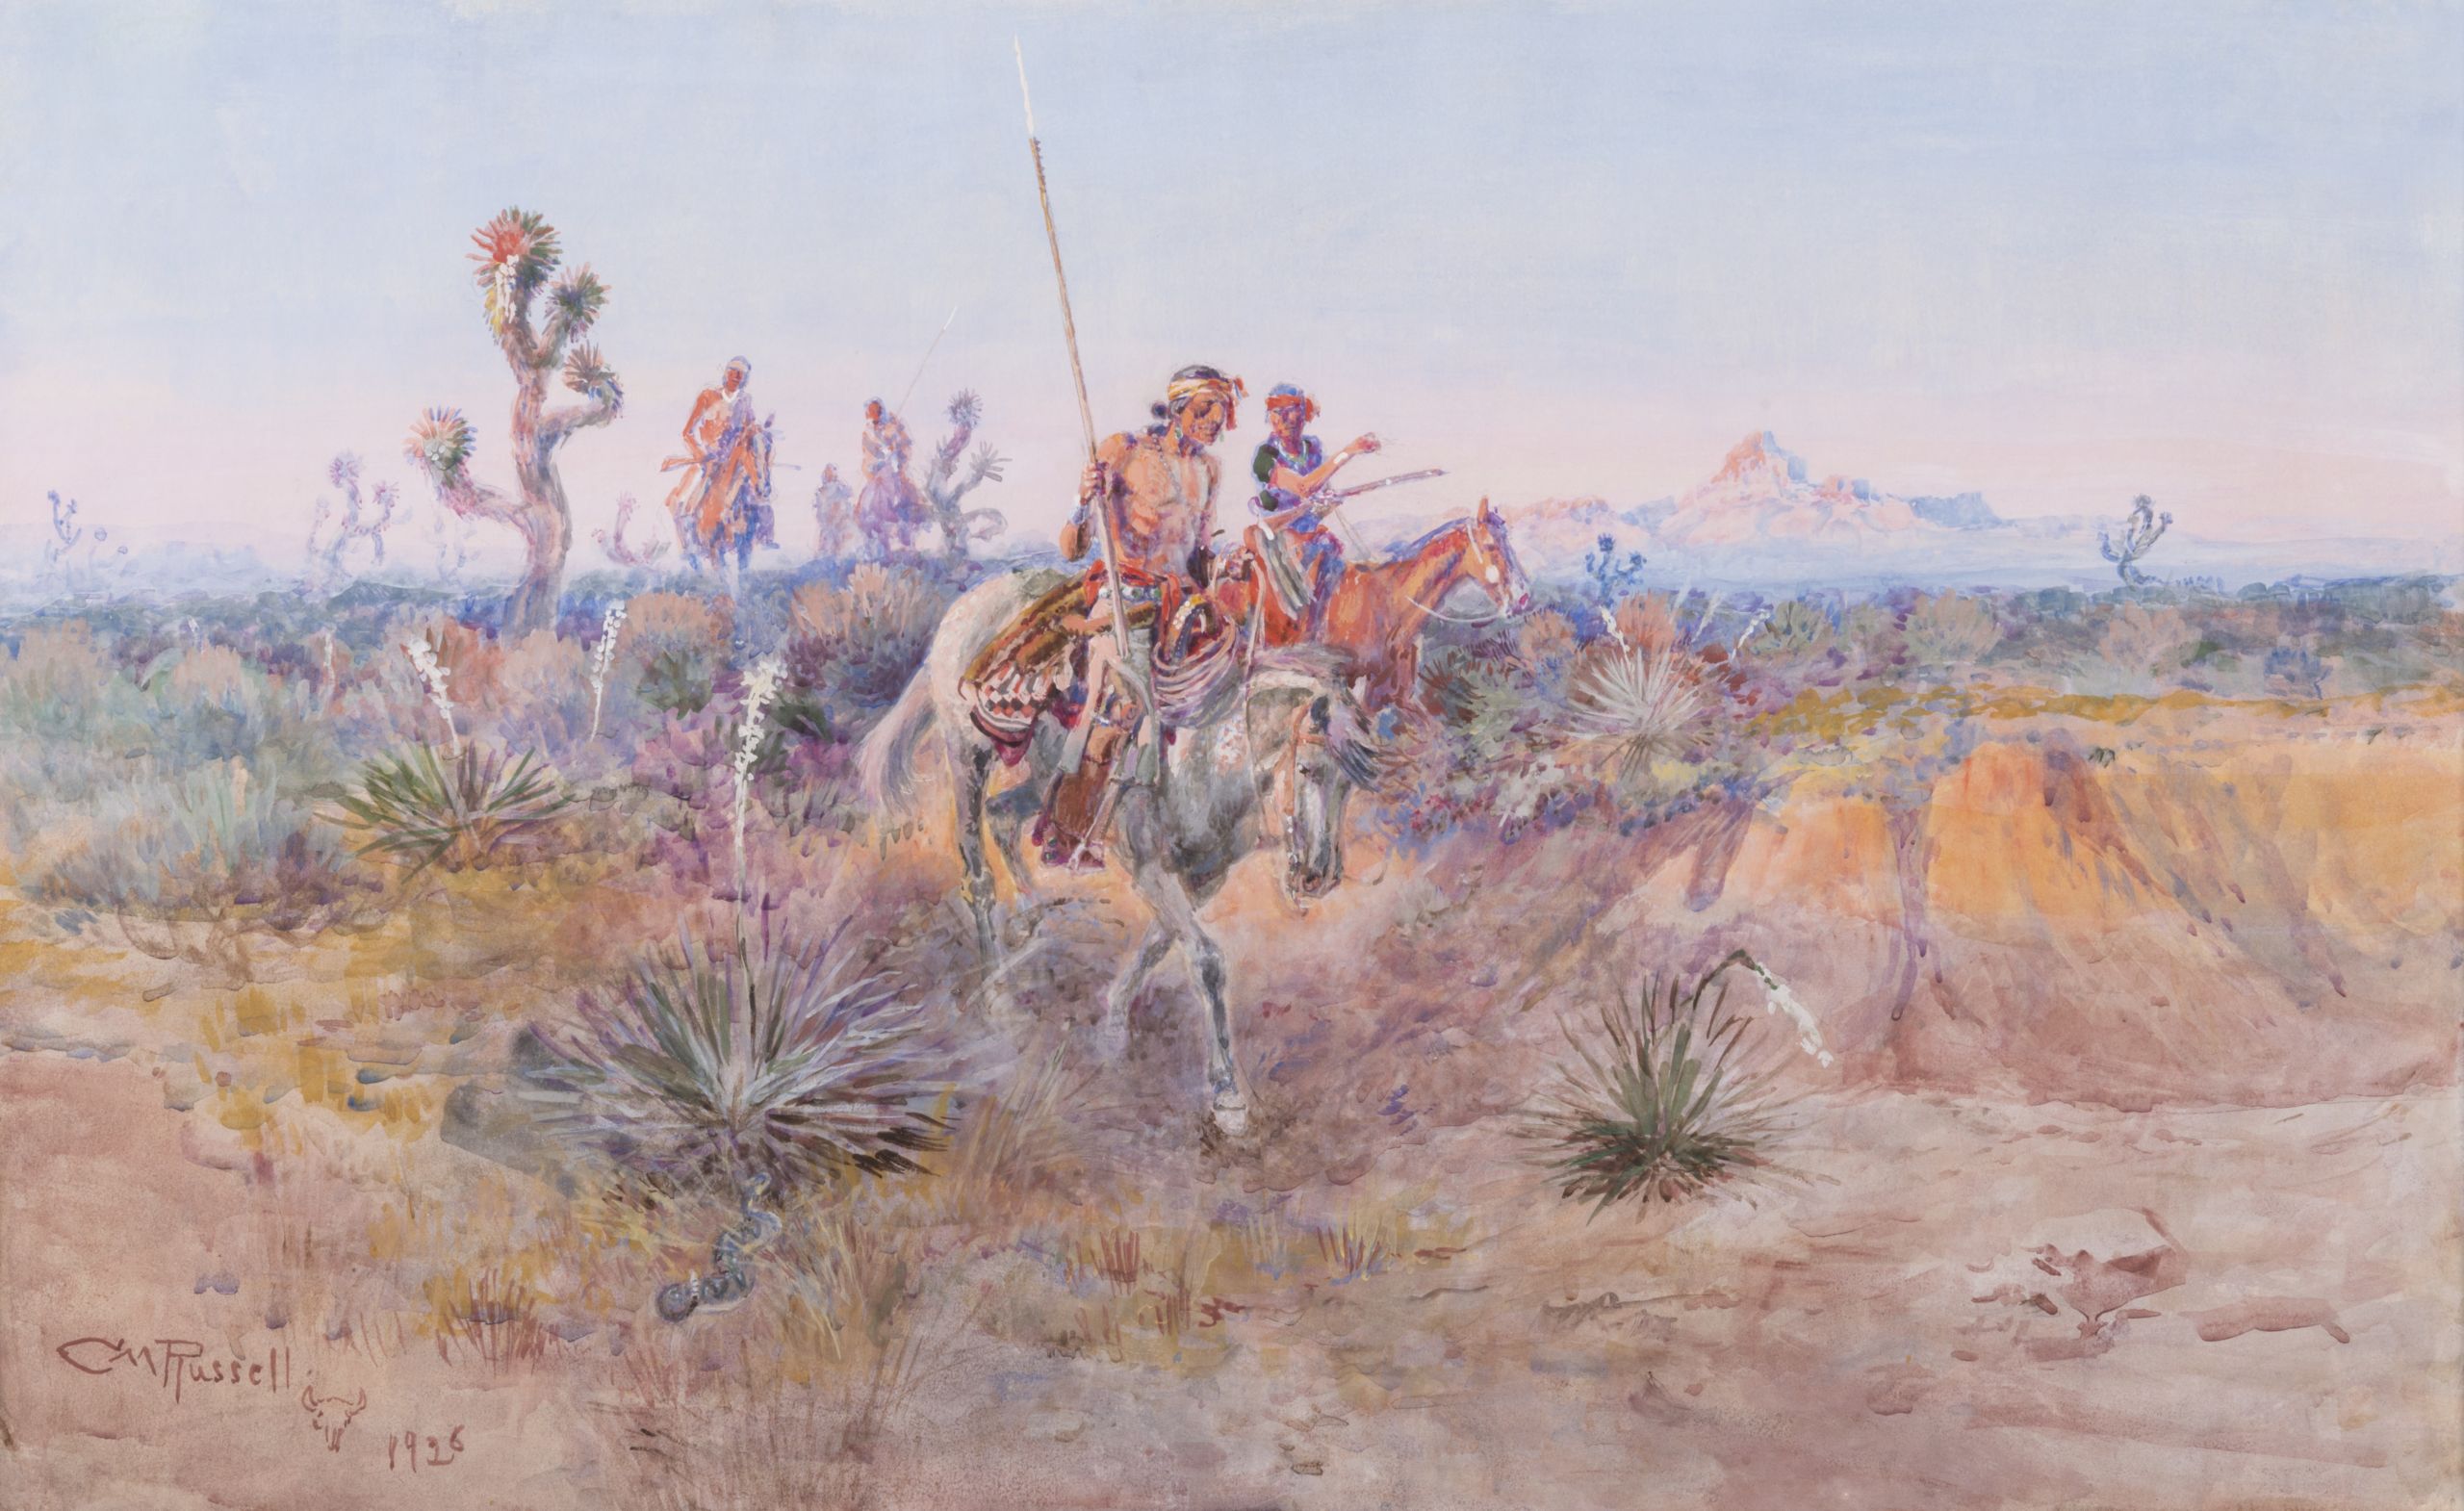 A group of Navajo men traveling on horseback through the desert.